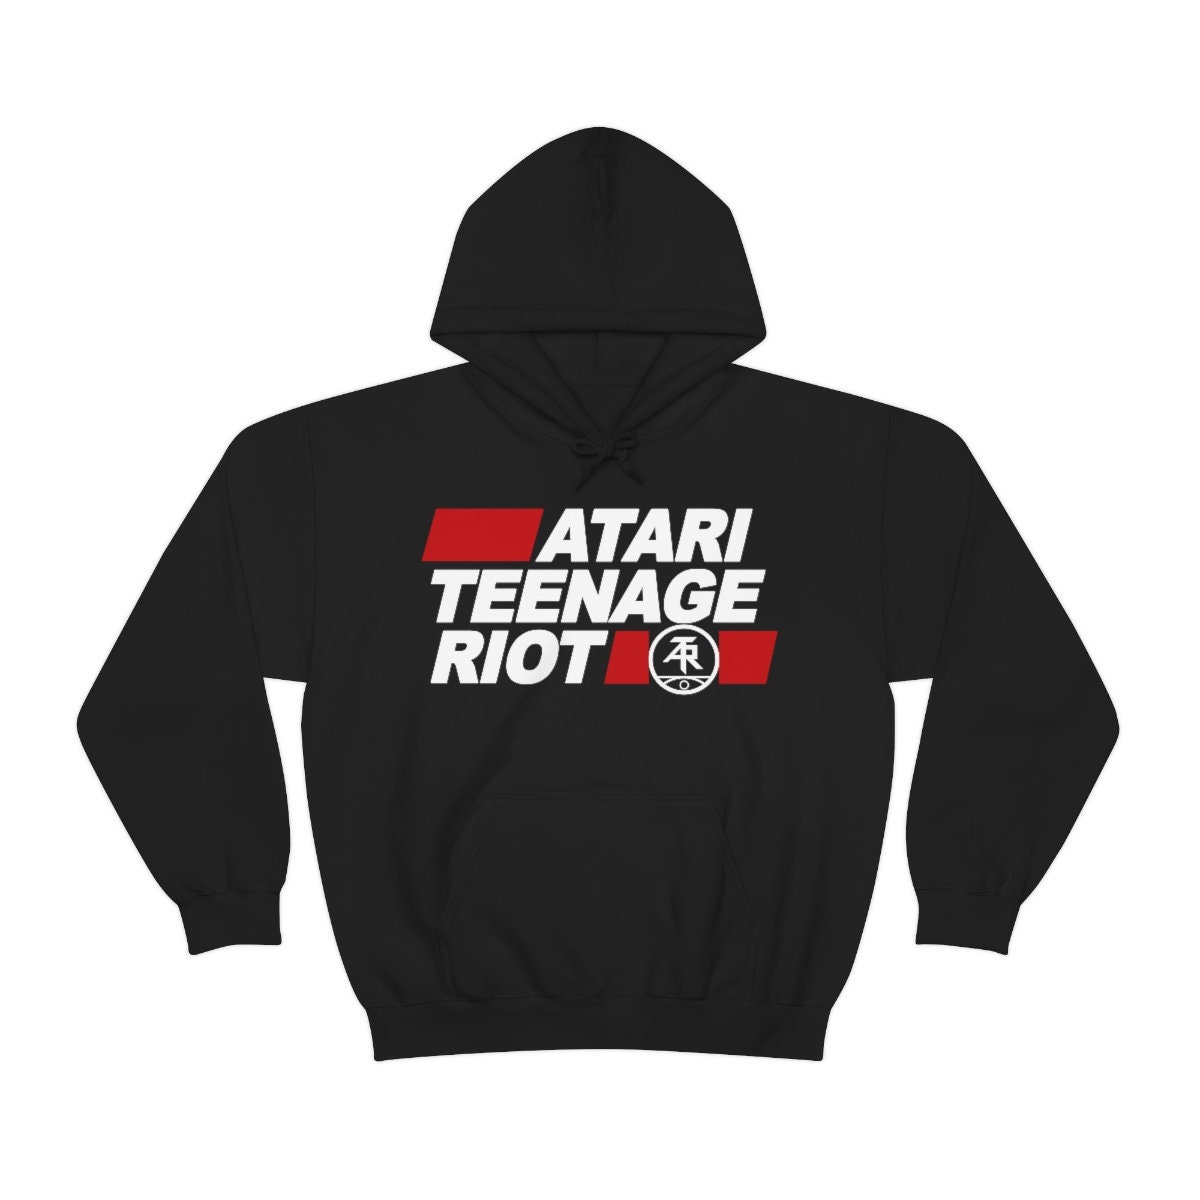 Atari Teenage Riot Hooded Sweatshirt ATR Hoodie Digital - Etsy 日本